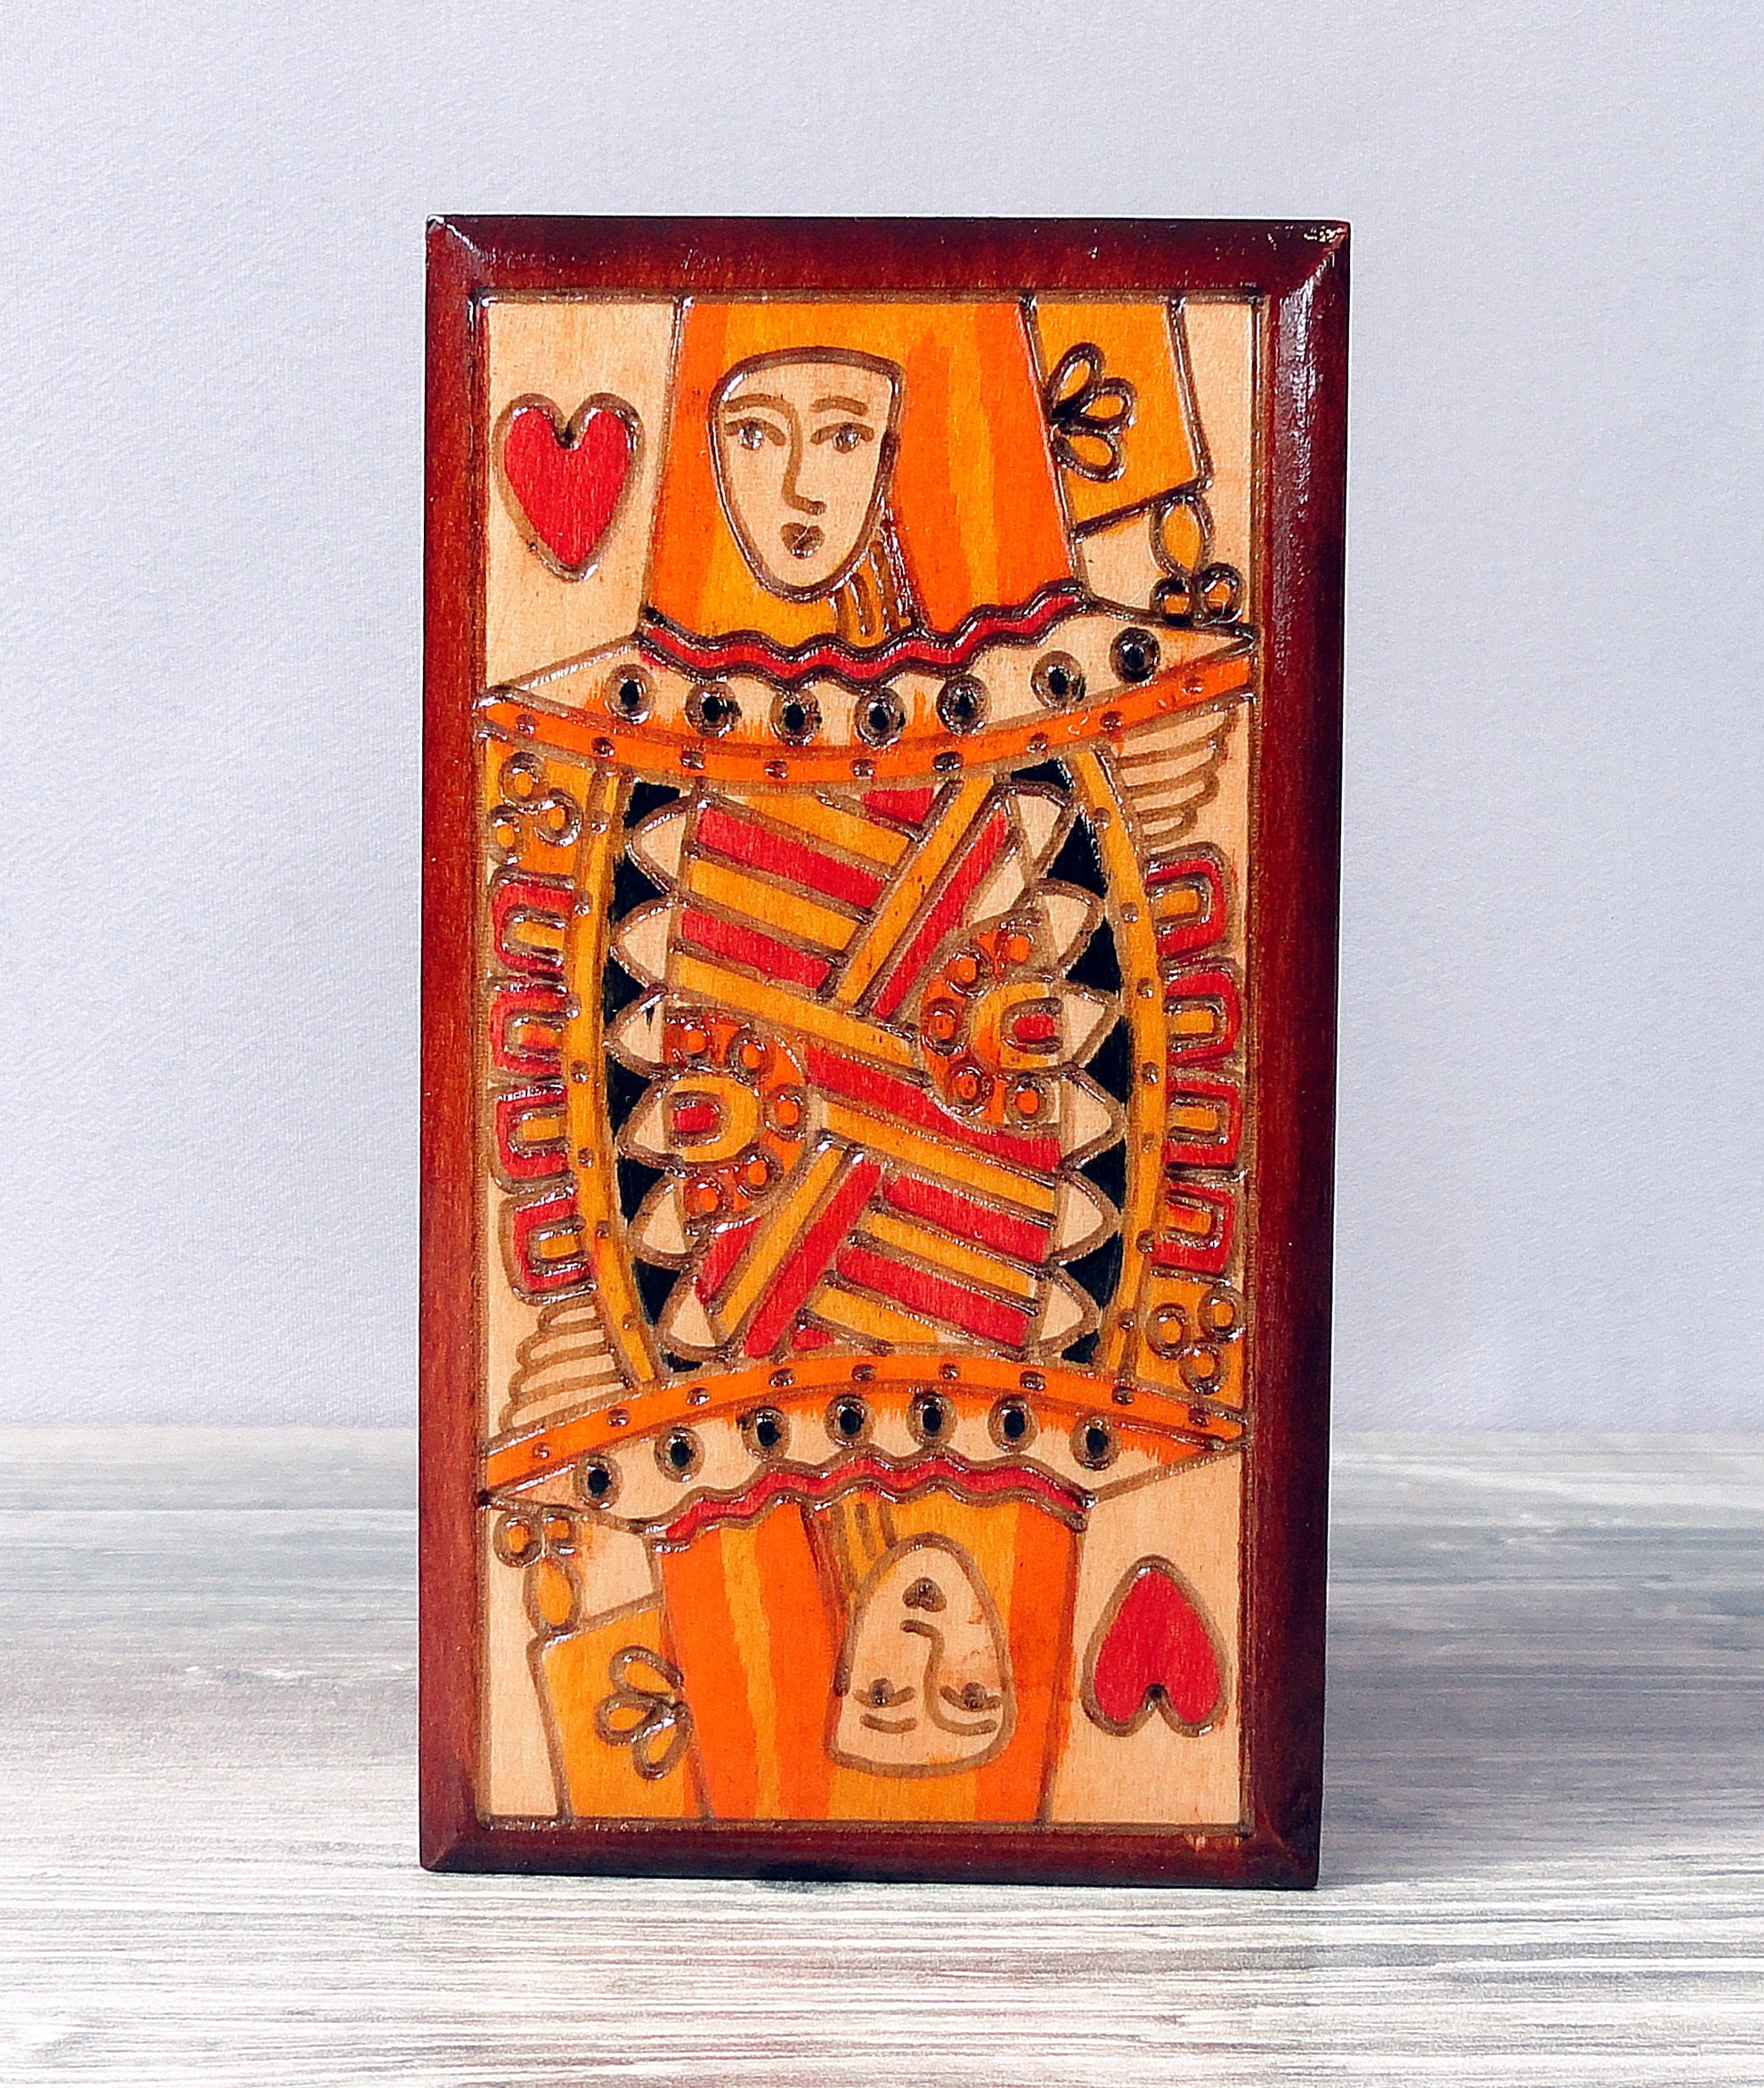 2 pezzi trapezoidale porta carte da gioco in legno a mano libera